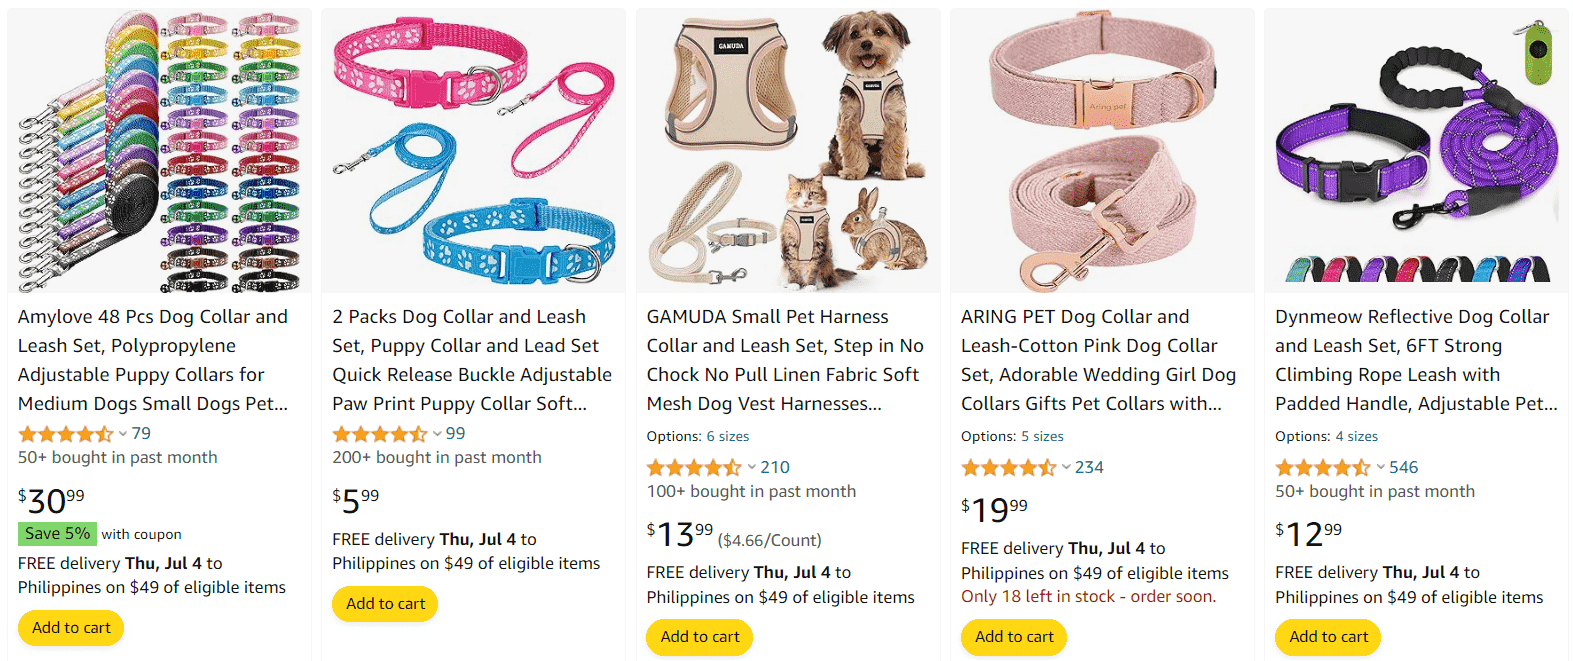 Halsbänder und Leinen für Haustiere